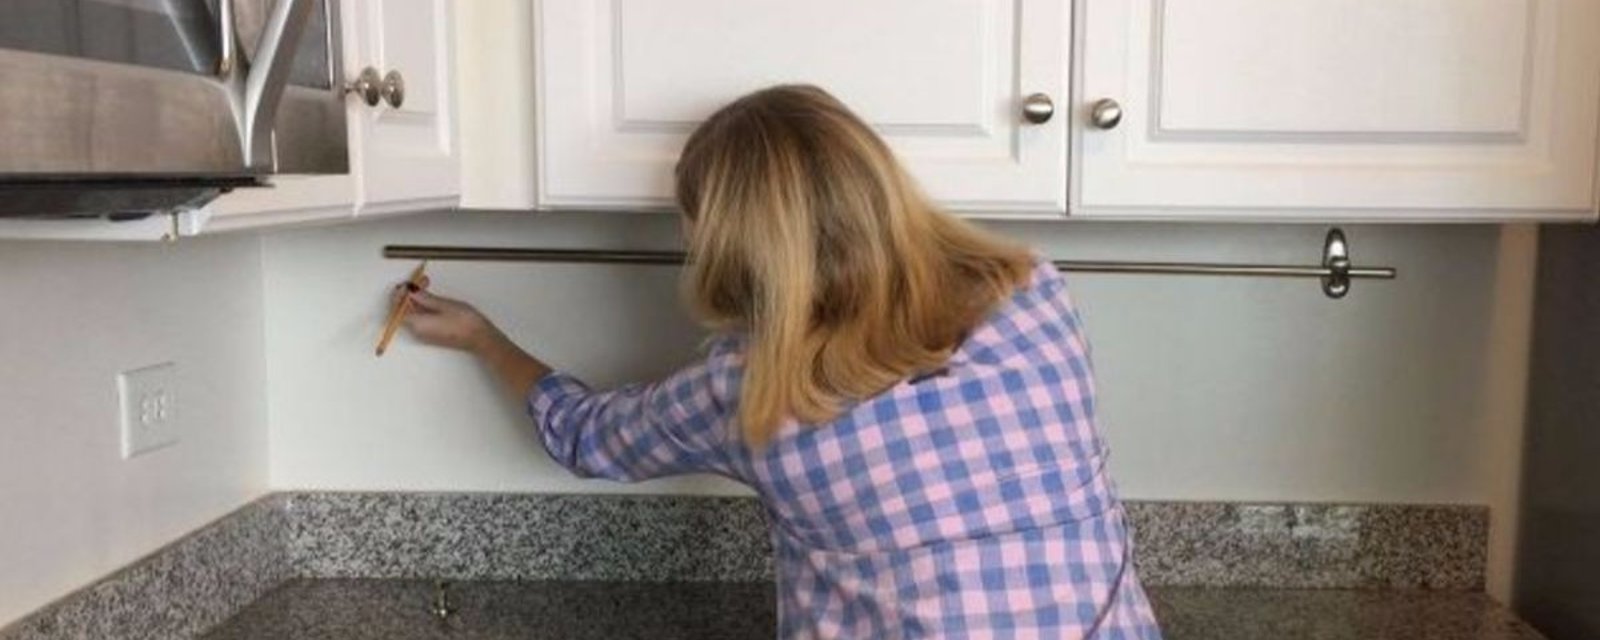 En installant une tringle à rideaux sur son mur de cuisine, elle ajoute un rangement auquel on ne penserait pas!